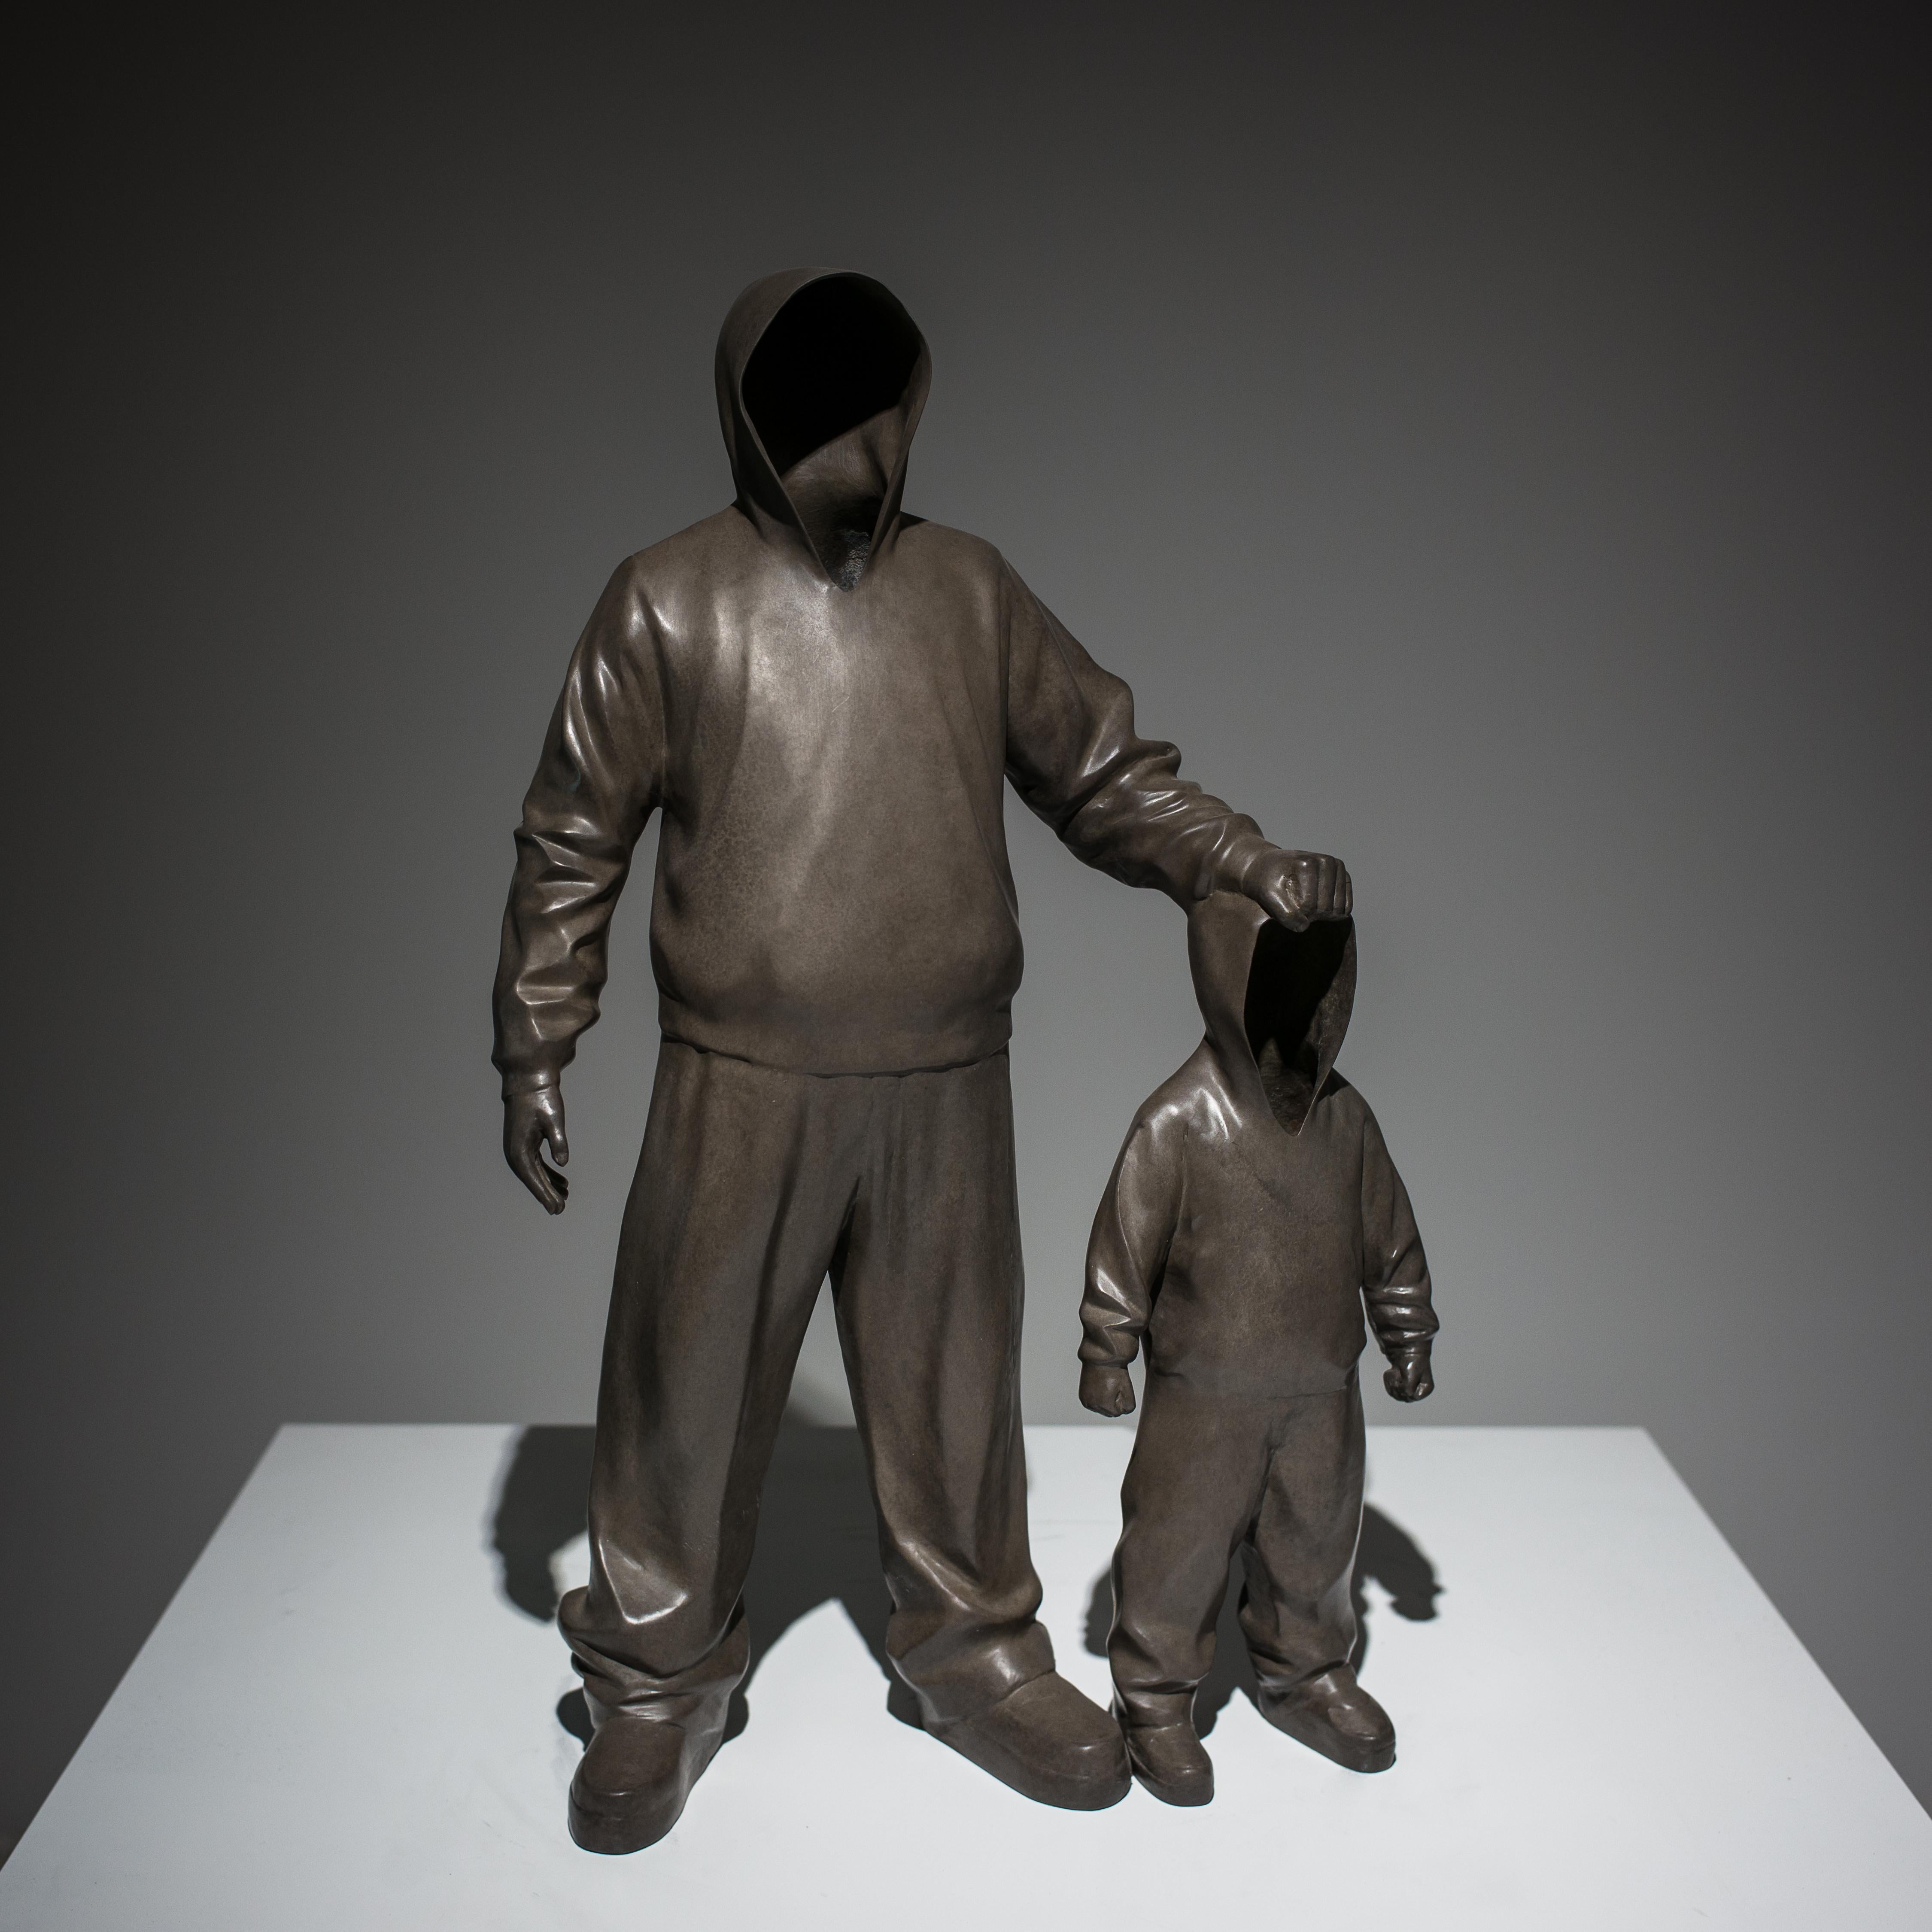 "Der Pate" Bronze-Skulptur 28 "x18 "x7" Zoll Edition von 8 von Huang Yulong


ÜBER DEN KÜNSTLER
Huang Yulong wurde 1983 in der Provinz Anhui, China, geboren. Im Jahr 2007 schloss er sein Studium am Jingdezhen Ceramic Institute in der Provinz Jiangxi